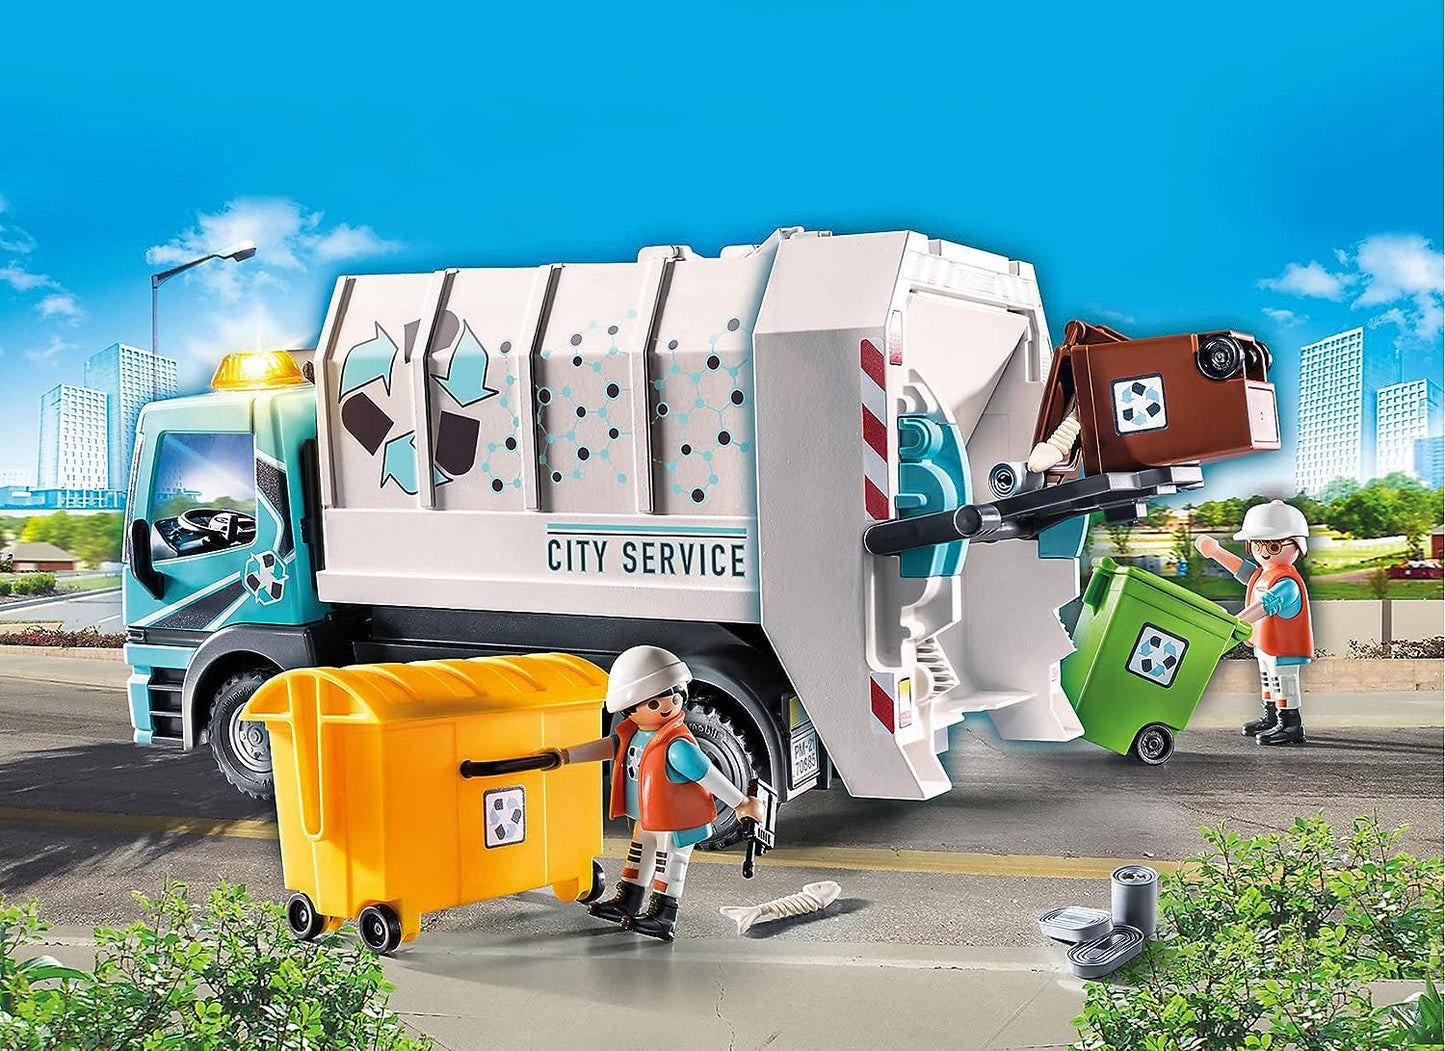 PLAYMOBIL City Life 70885 Caminhão de reciclagem com luz intermitente 4+ Anos